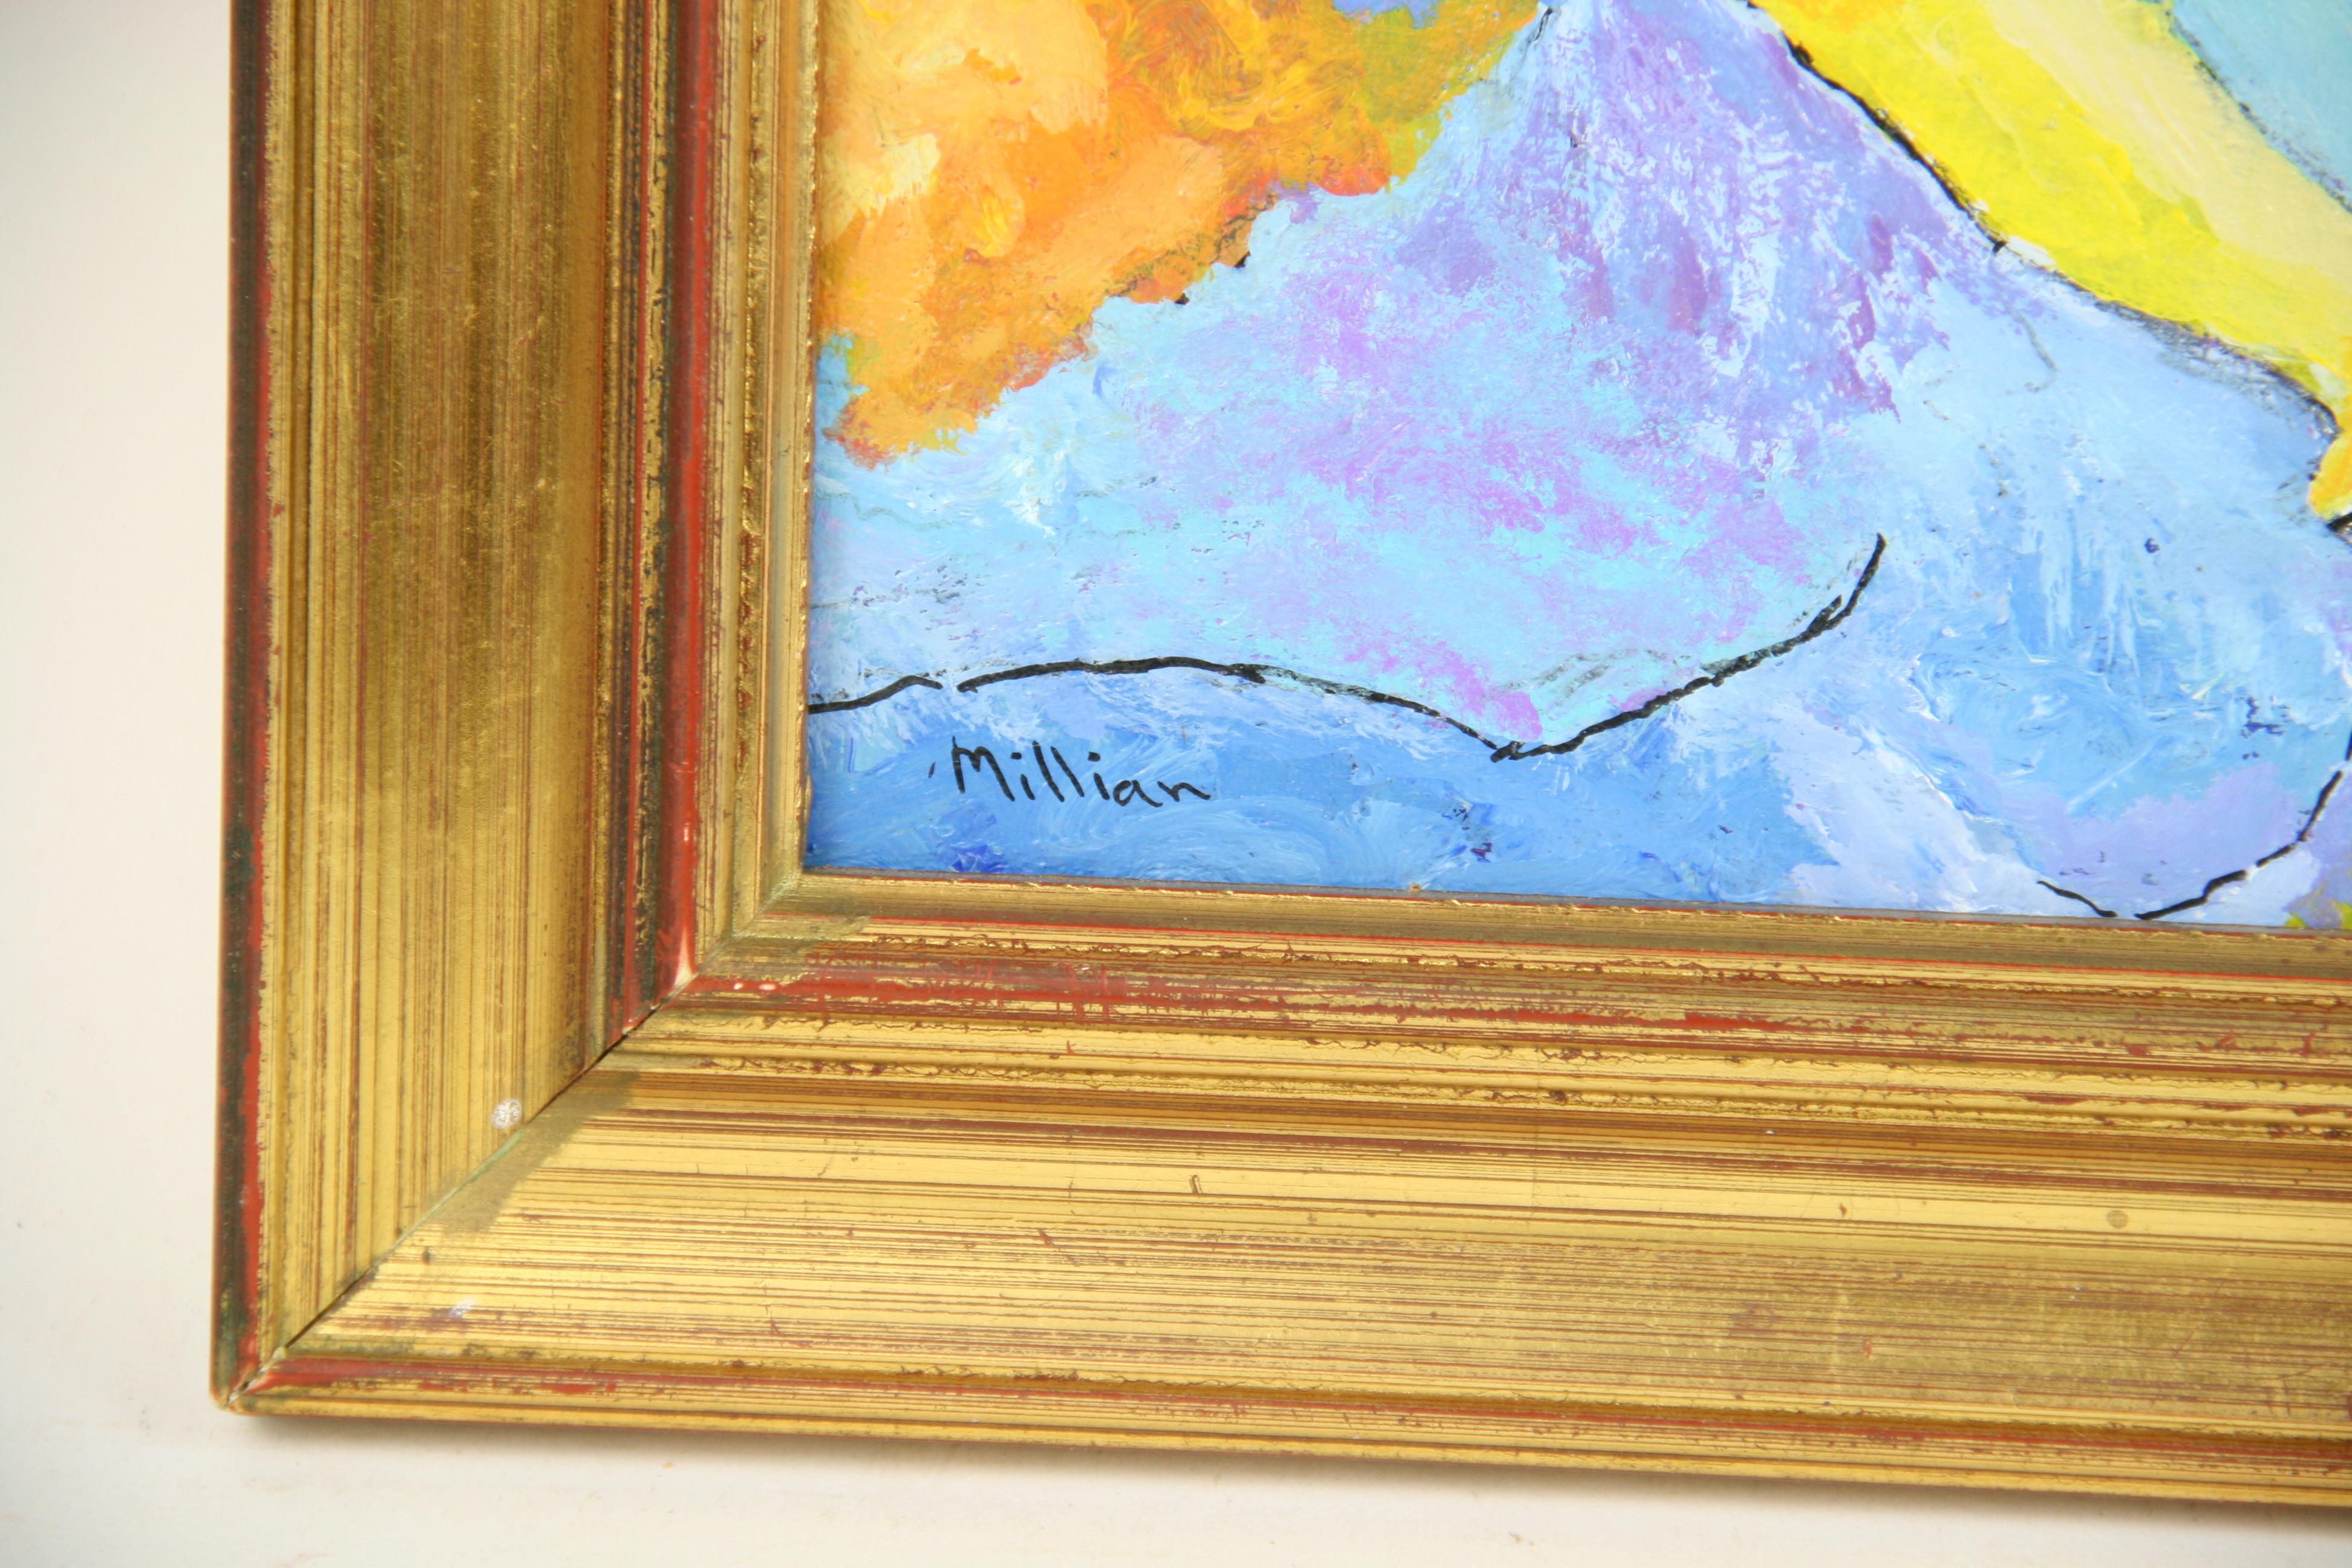 5-3180a Acrylique sur panneau d'artiste signée Millian
Taille de l'image 6.5x9